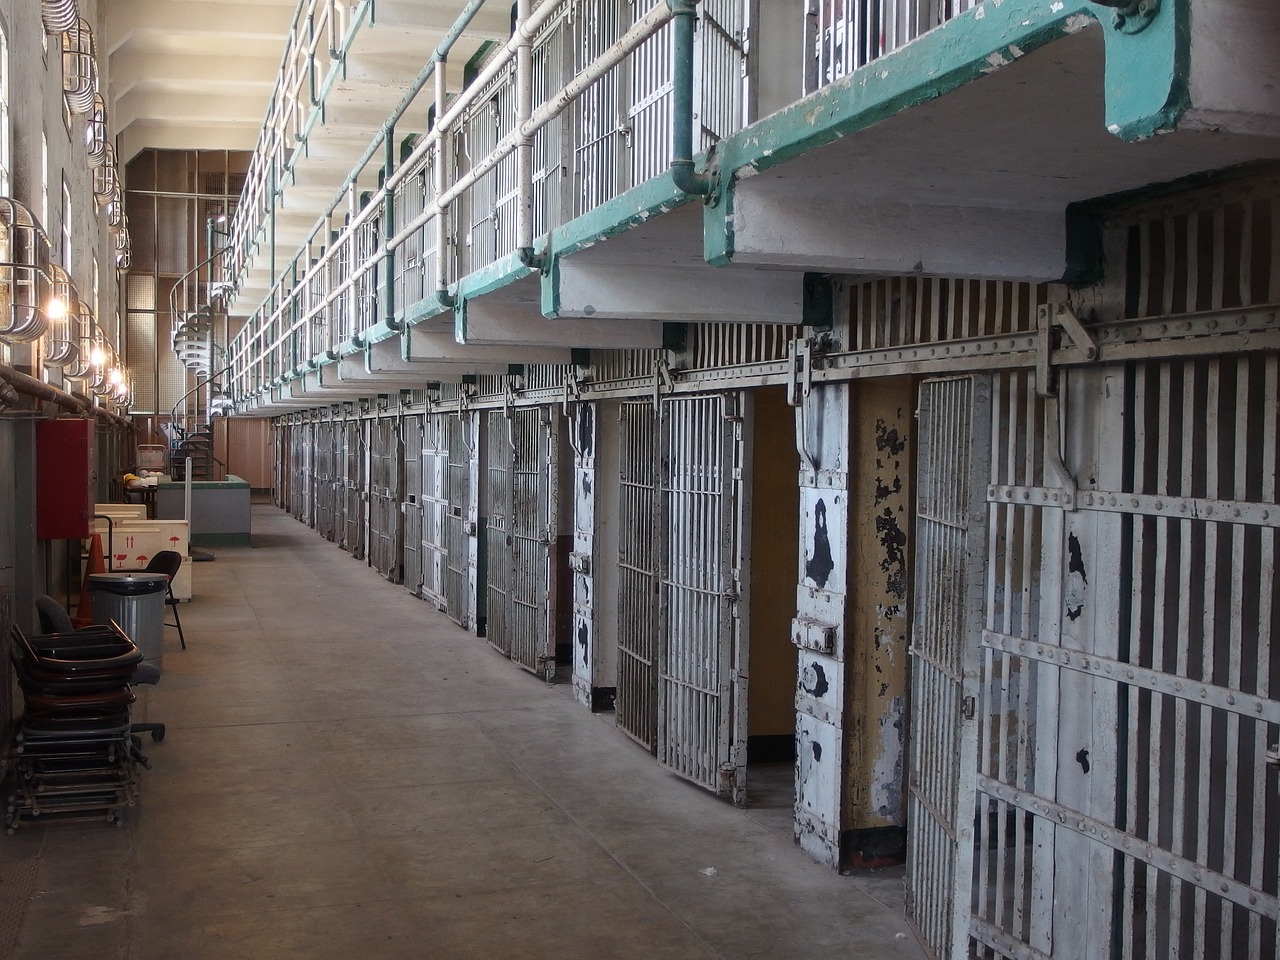 Maximum Security Cells in Alcatraz Prison